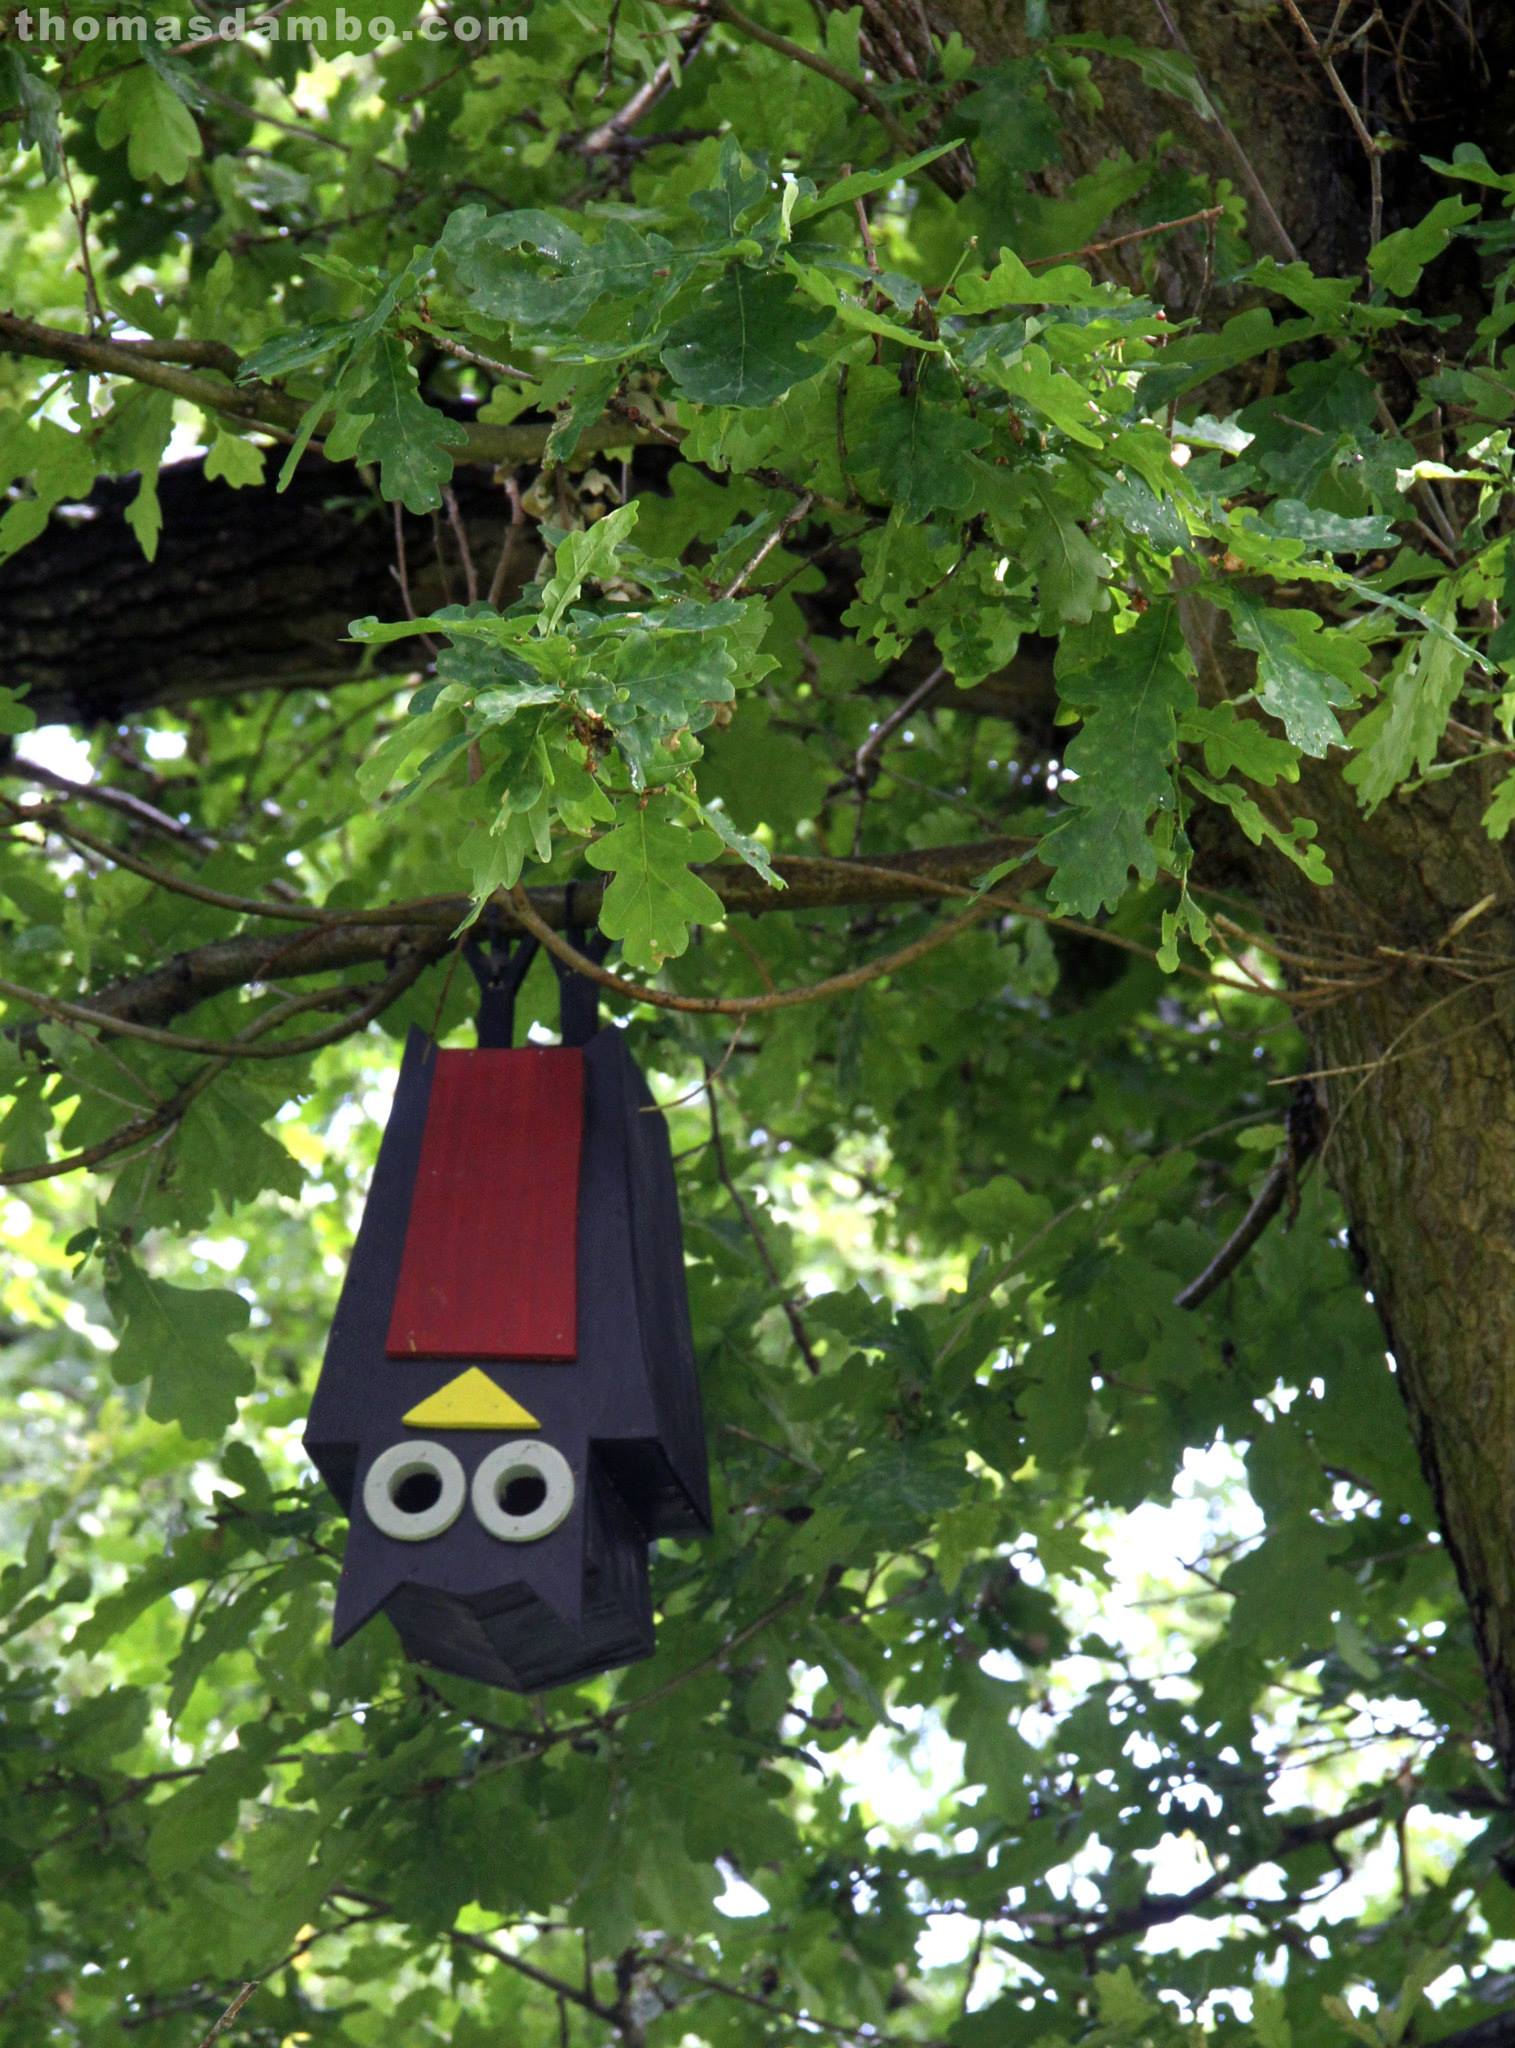 Rumah burung berbentuk kucing yang dipasang di pohon di sebuah taman kota. Foto : thomasdambo.com